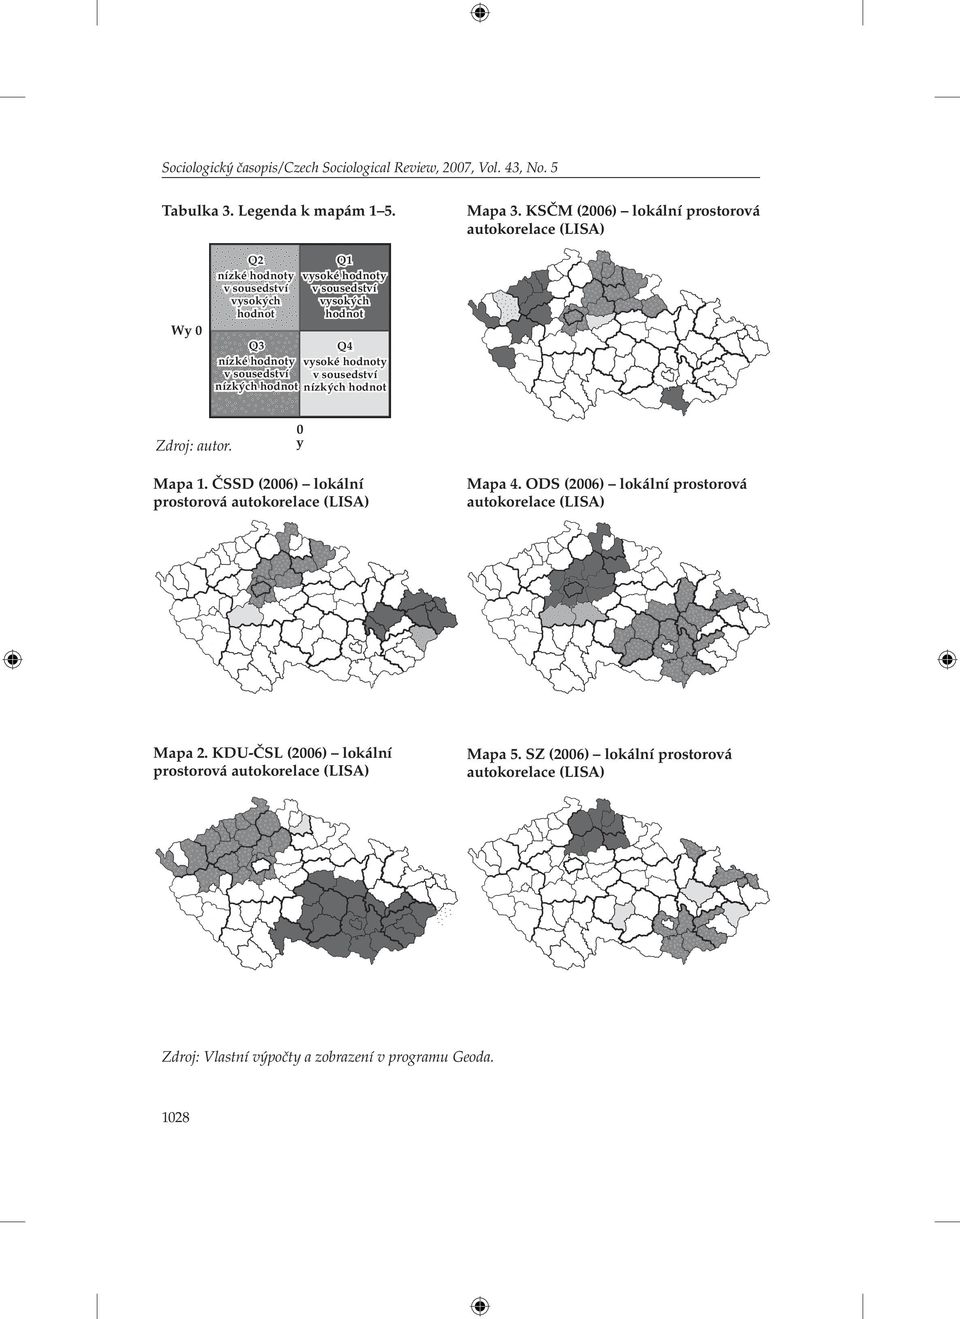 hodnoty vysoké hodnoty v sousedství v sousedství nízkých hodnot nízkých hodnot Zdroj: autor. 0 y Mapa 1. ČSSD (2006) lokální prostorová autokorelace (LISA) Mapa 4.